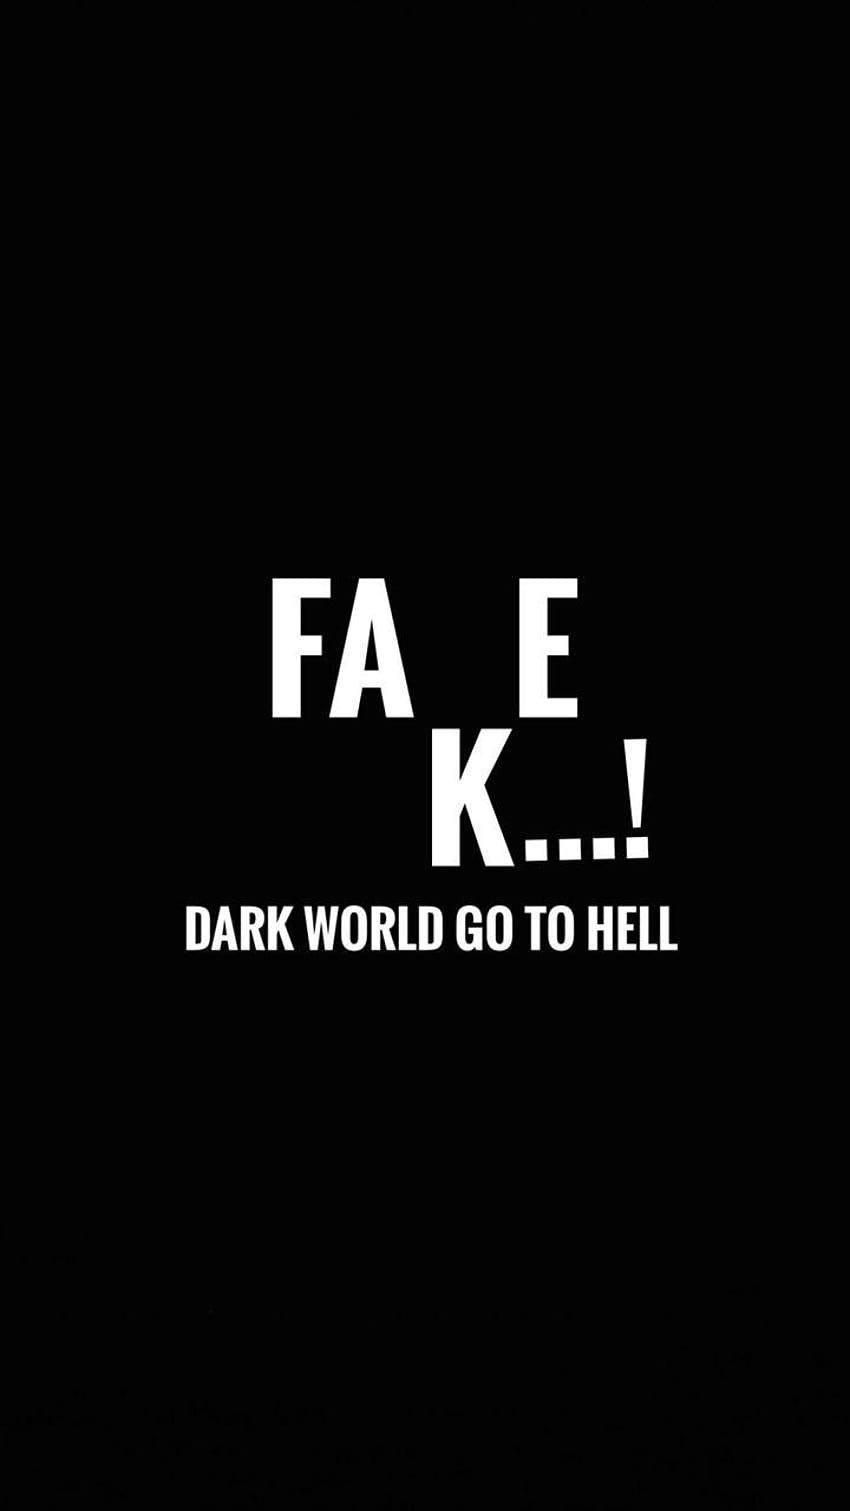 Fake peoples fake world